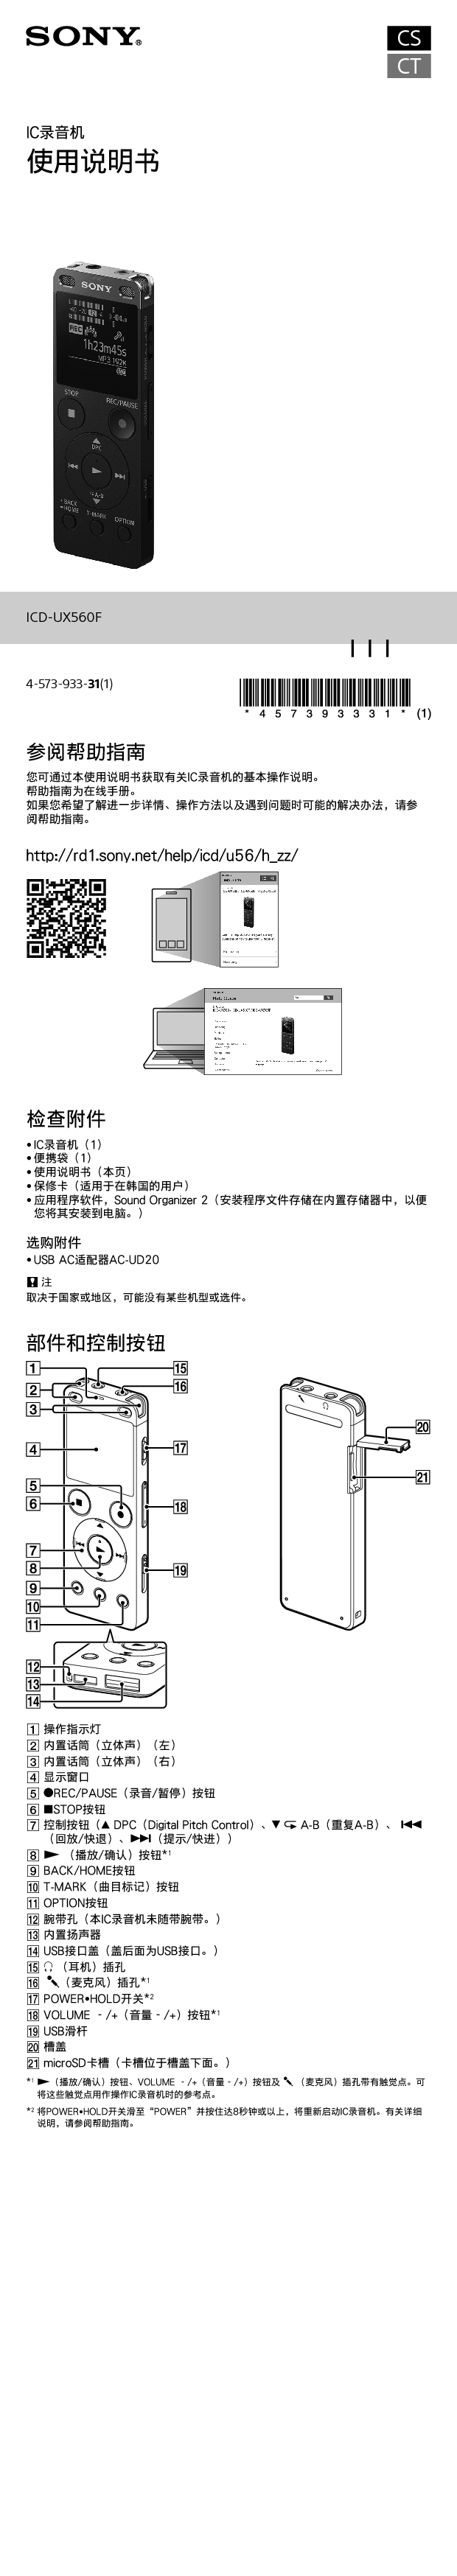 索尼 Sony ICD-UX560F 使用说明书 封面